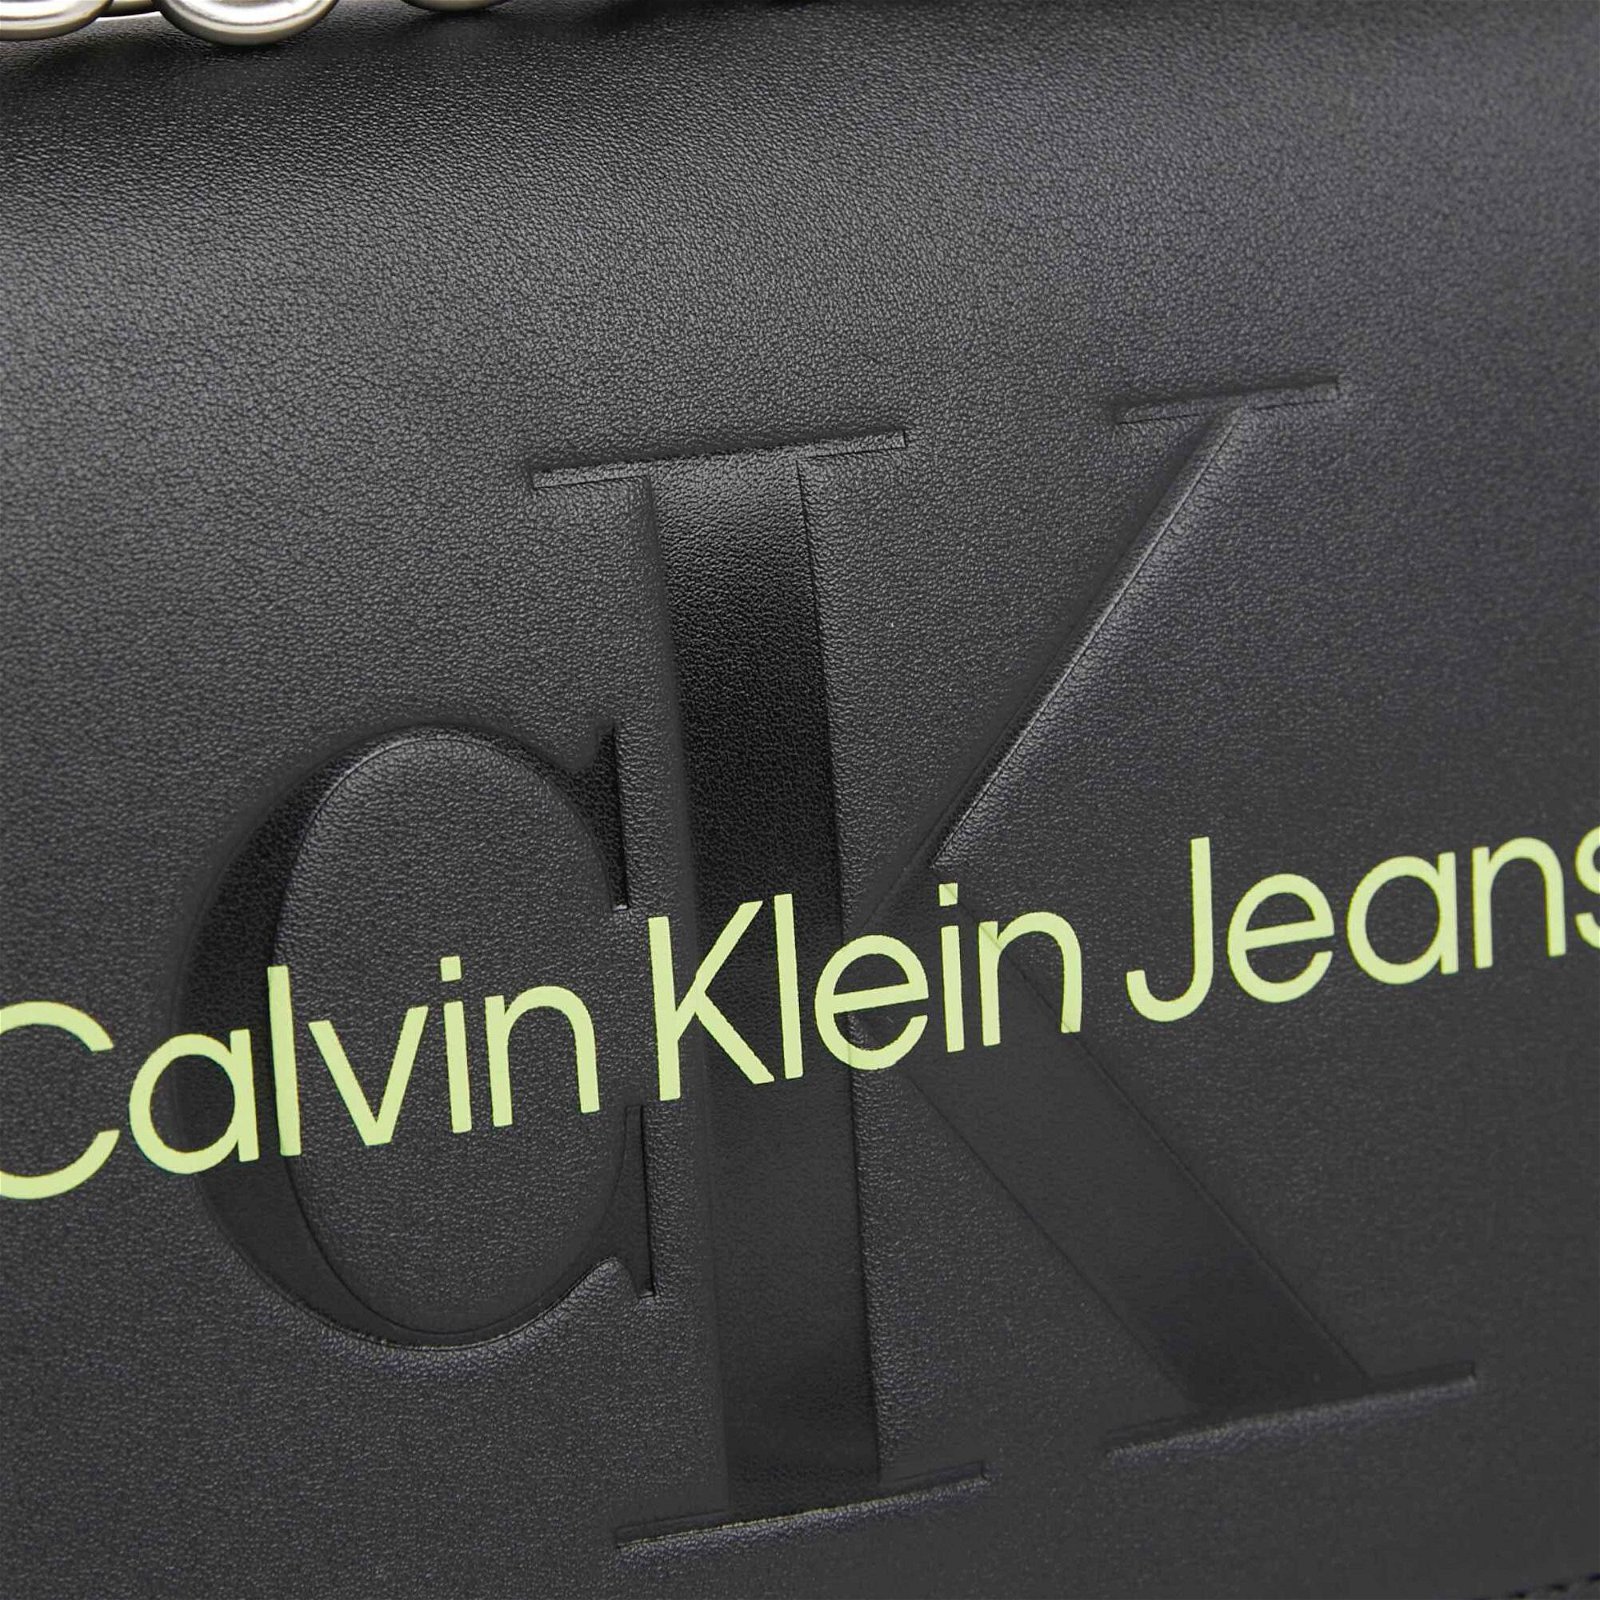 Calvin Klein Jeans Sculpted Kadın Siyah Omuz Çantası